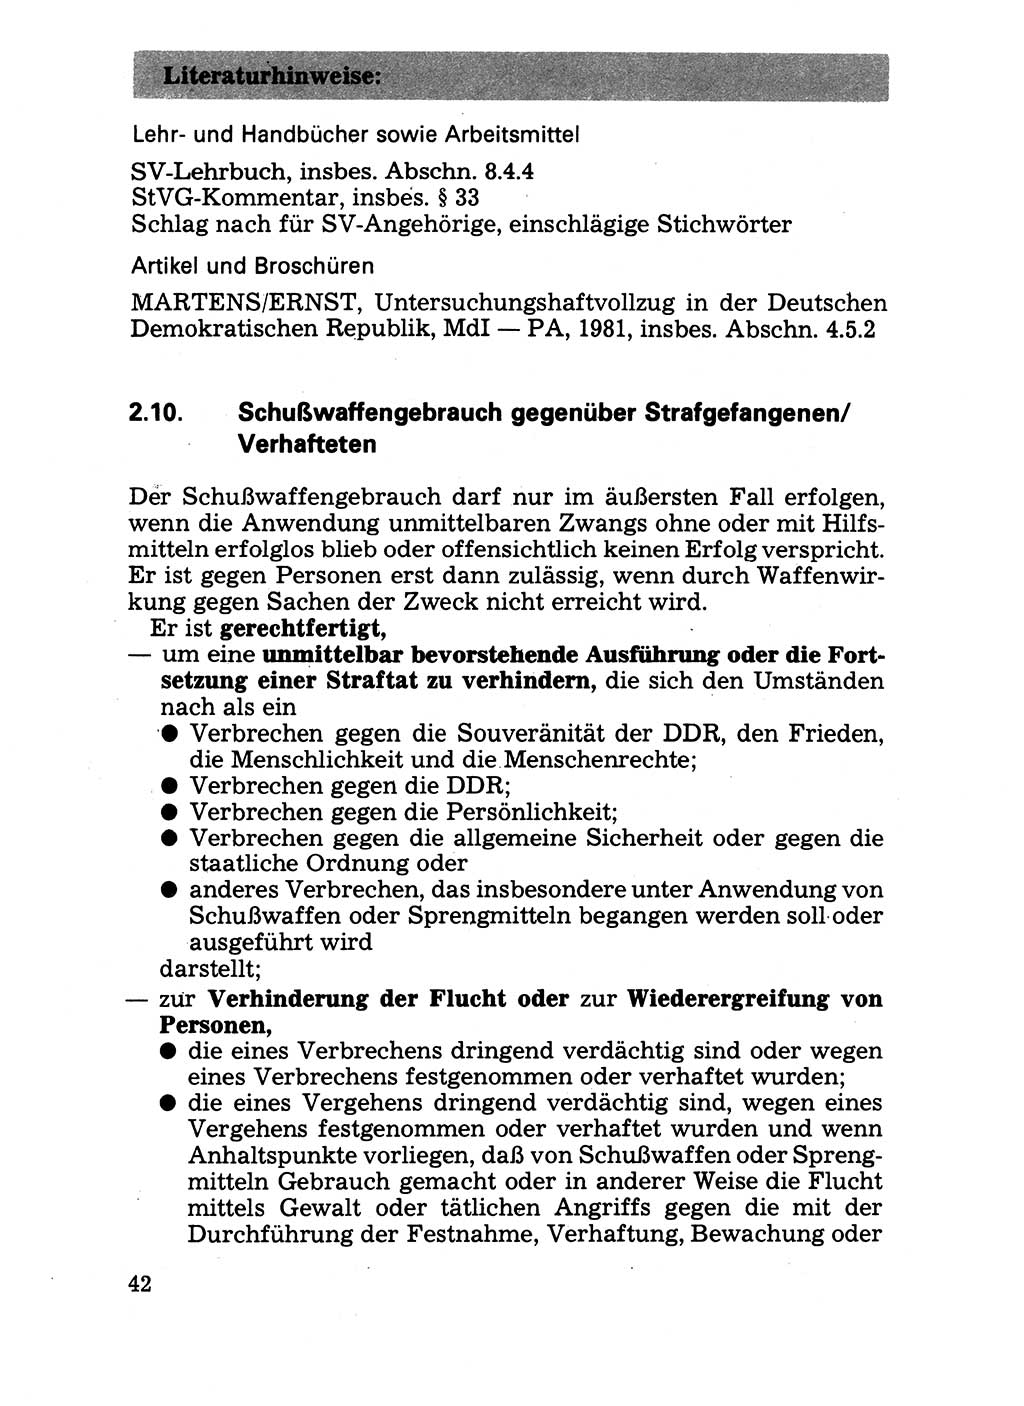 Handbuch für operative Dienste, Abteilung Strafvollzug (SV) [Ministerium des Innern (MdI) Deutsche Demokratische Republik (DDR)] 1981, Seite 42 (Hb. op. D. Abt. SV MdI DDR 1981, S. 42)